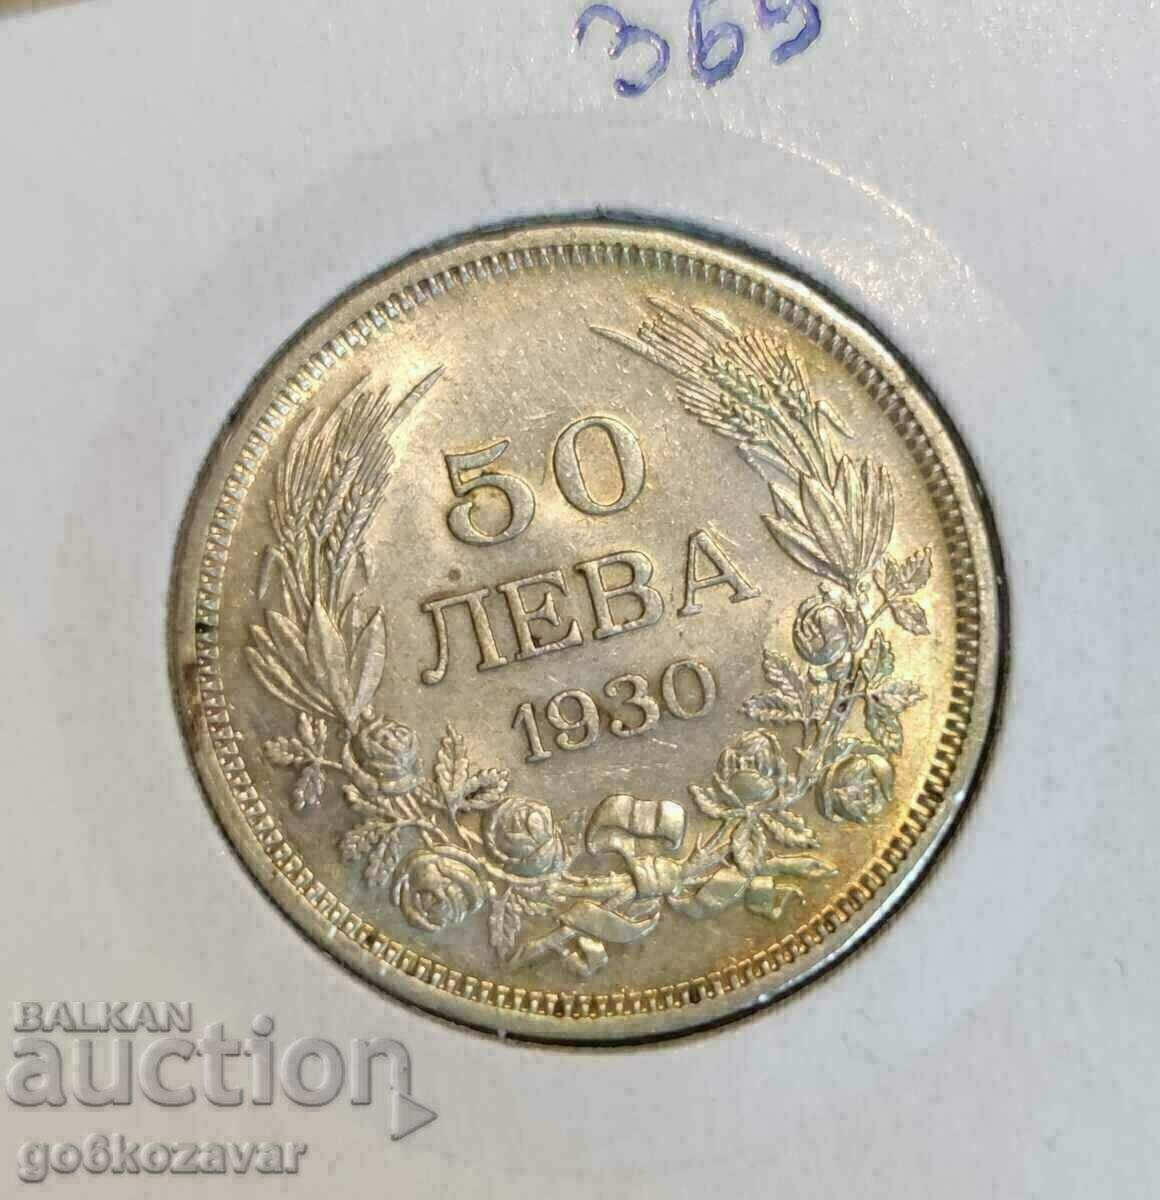 Bulgaria BGN 50 1930 Silver! UNC